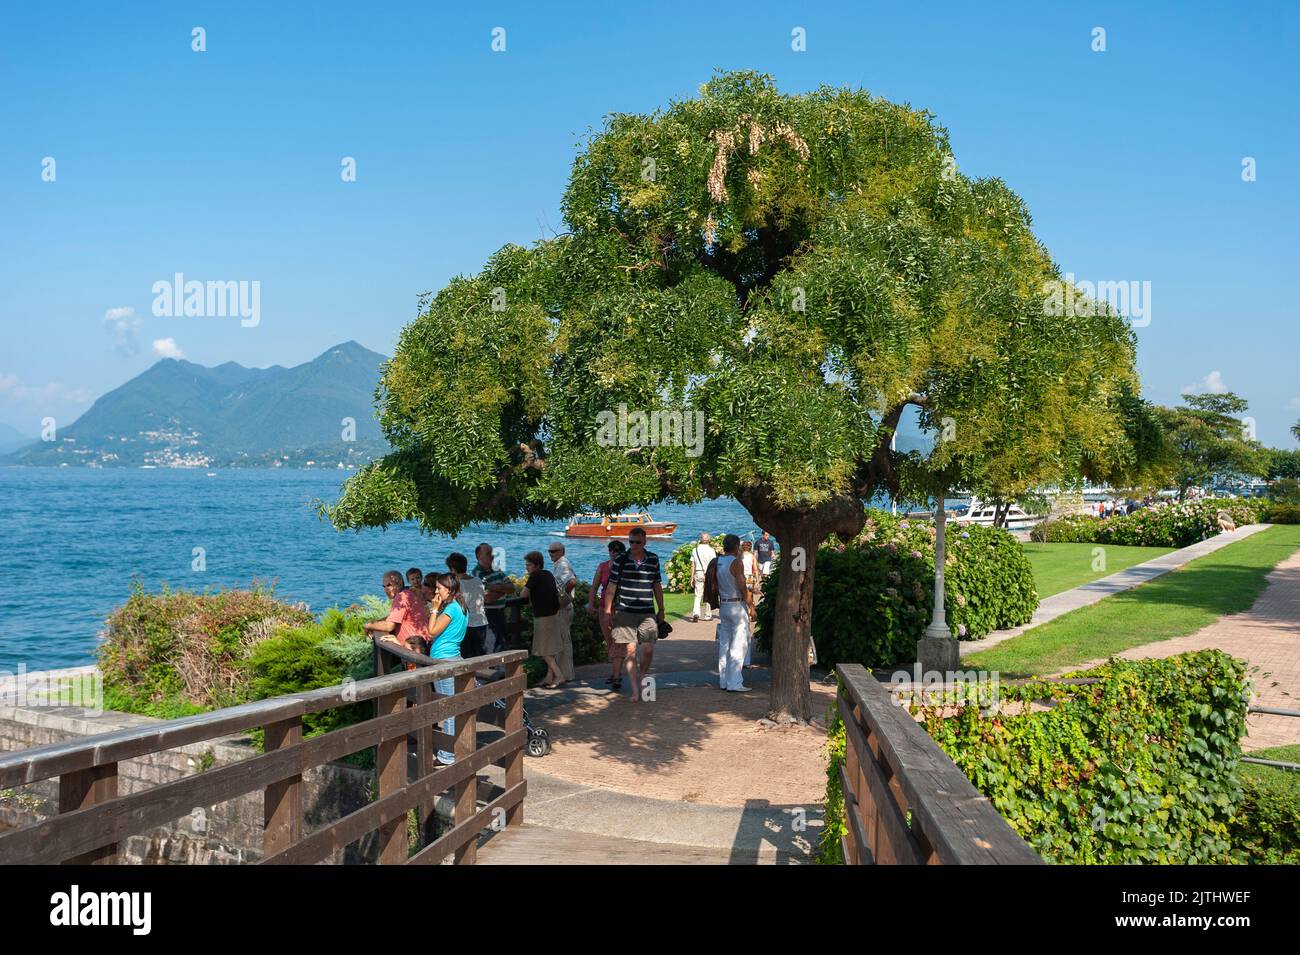 Promenade on Lake Maggiore, Stresa, Lake Maggiore, Piedmont, Italy, Europe Stock Photo